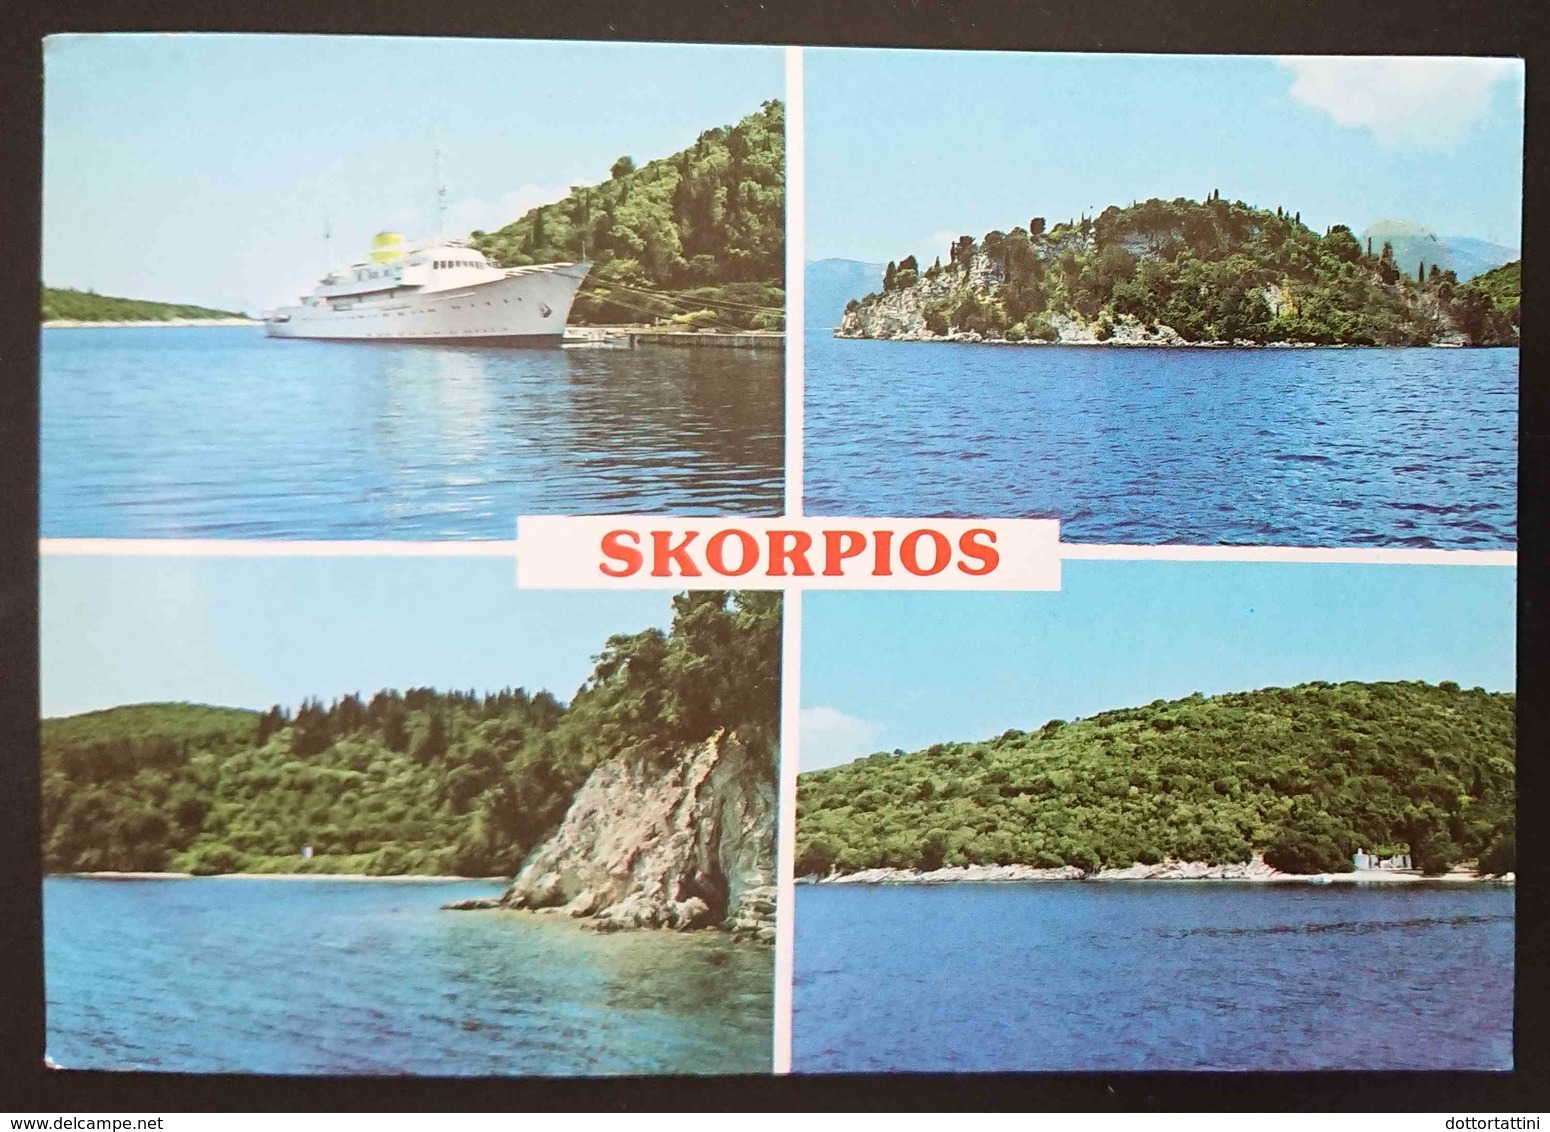 LEFKAS - SKORPIOS - Greece - Boat  Vg - Grecia